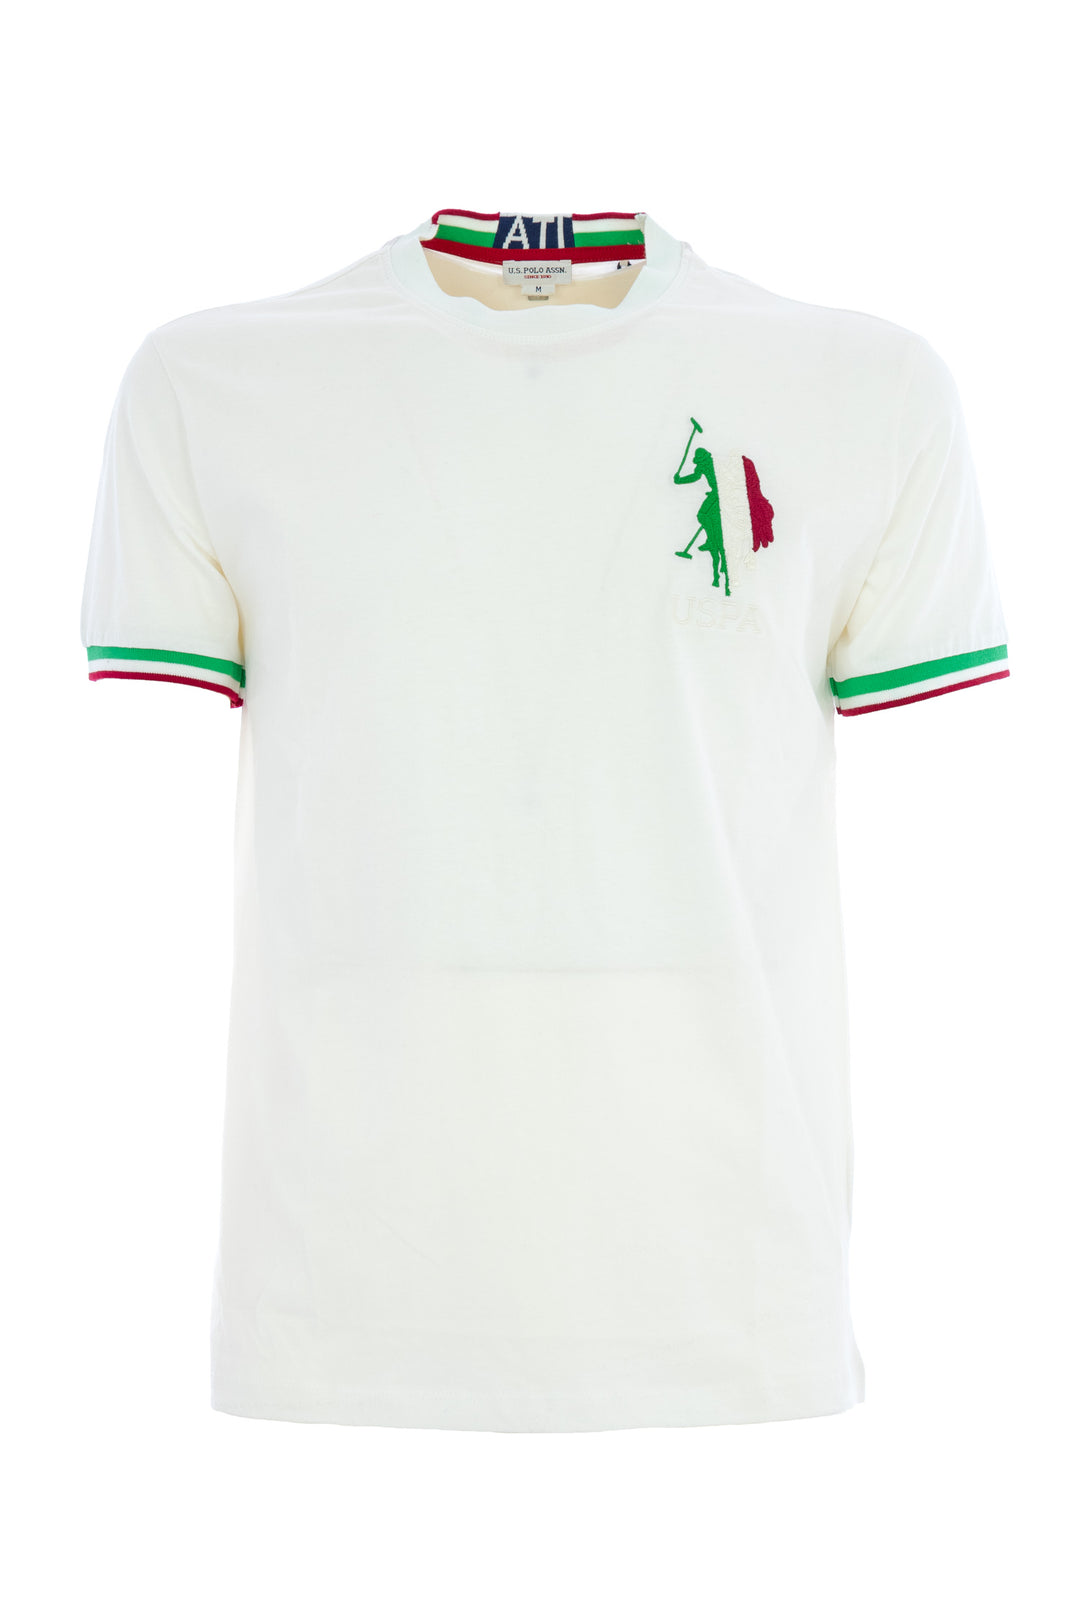 U.S. POLO ASSN. T-shirt bianca in cotone con logo tricolore italiano ricamato - Mancinelli 1954